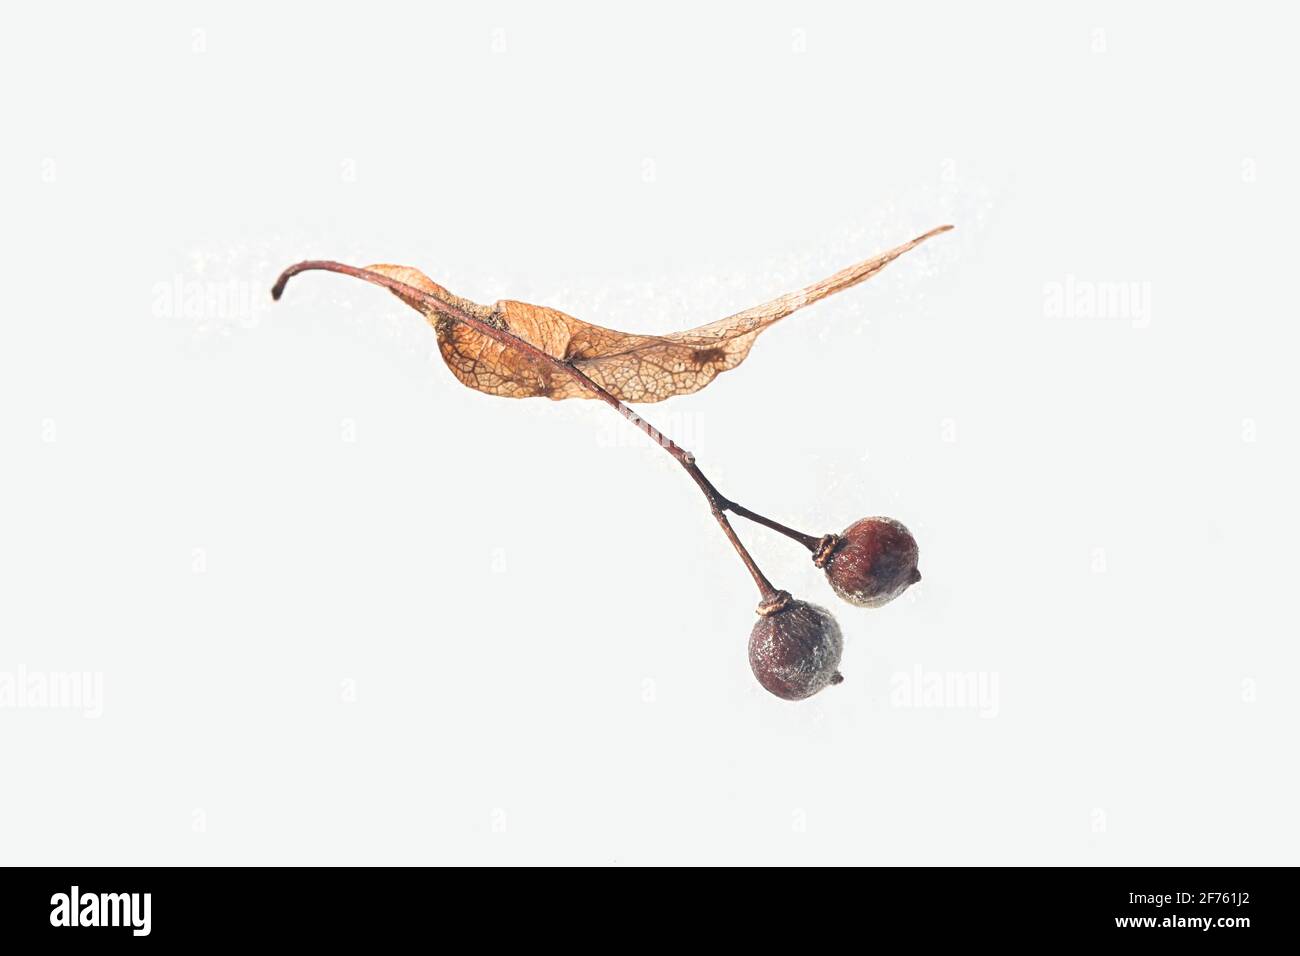 Samen von Tilia europaea, allgemein bekannt als der gewöhnliche Kalk oder die gewöhnliche Linde, fotografiert auf Schnee im März Stockfoto